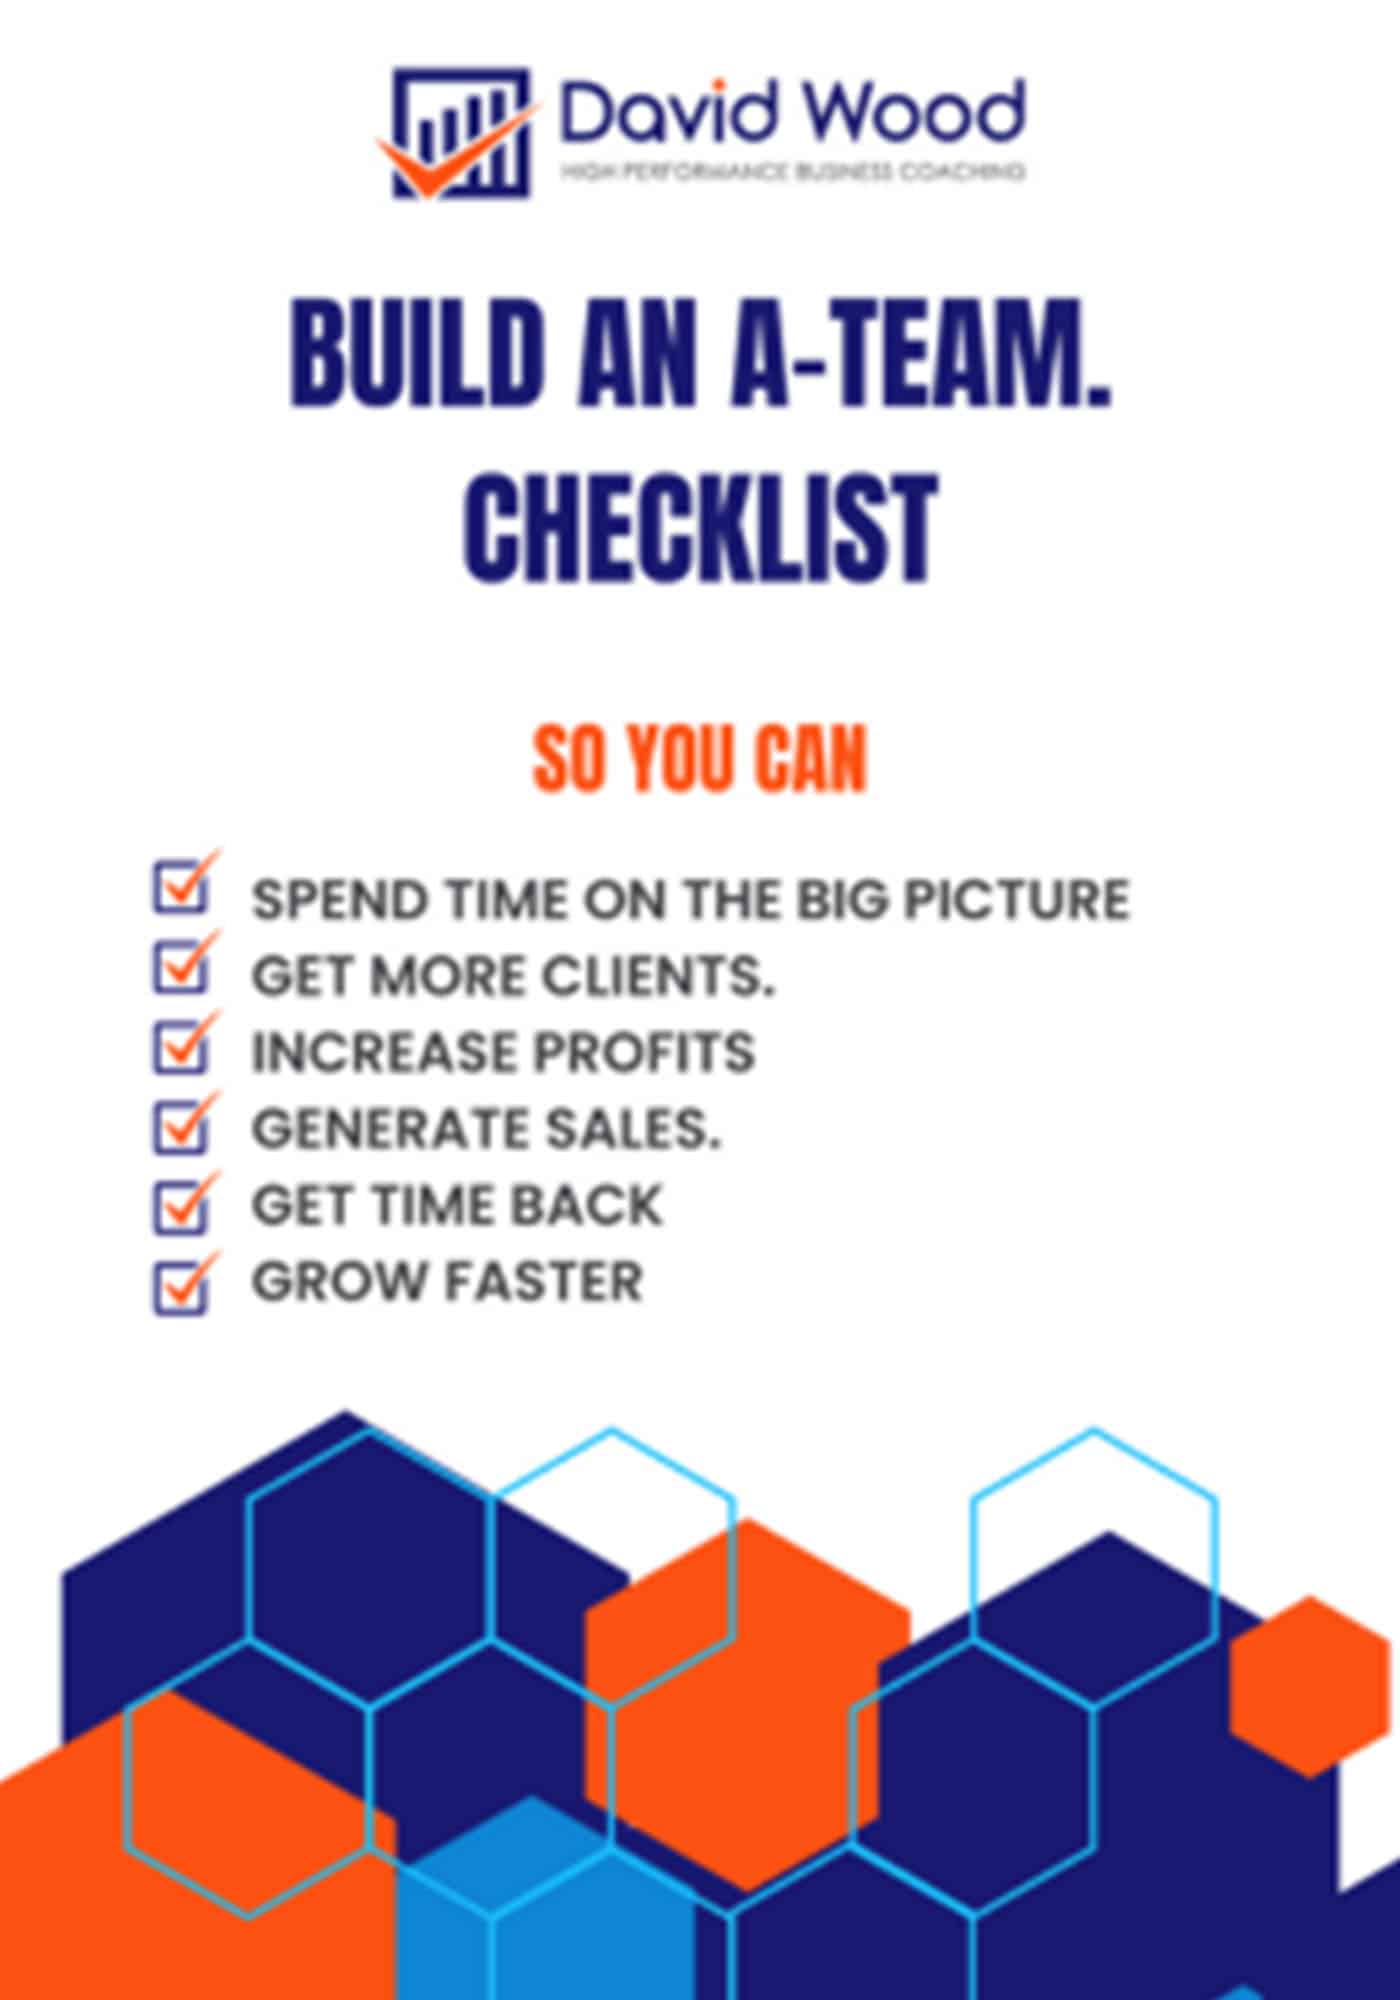 Buila an A-team checklist